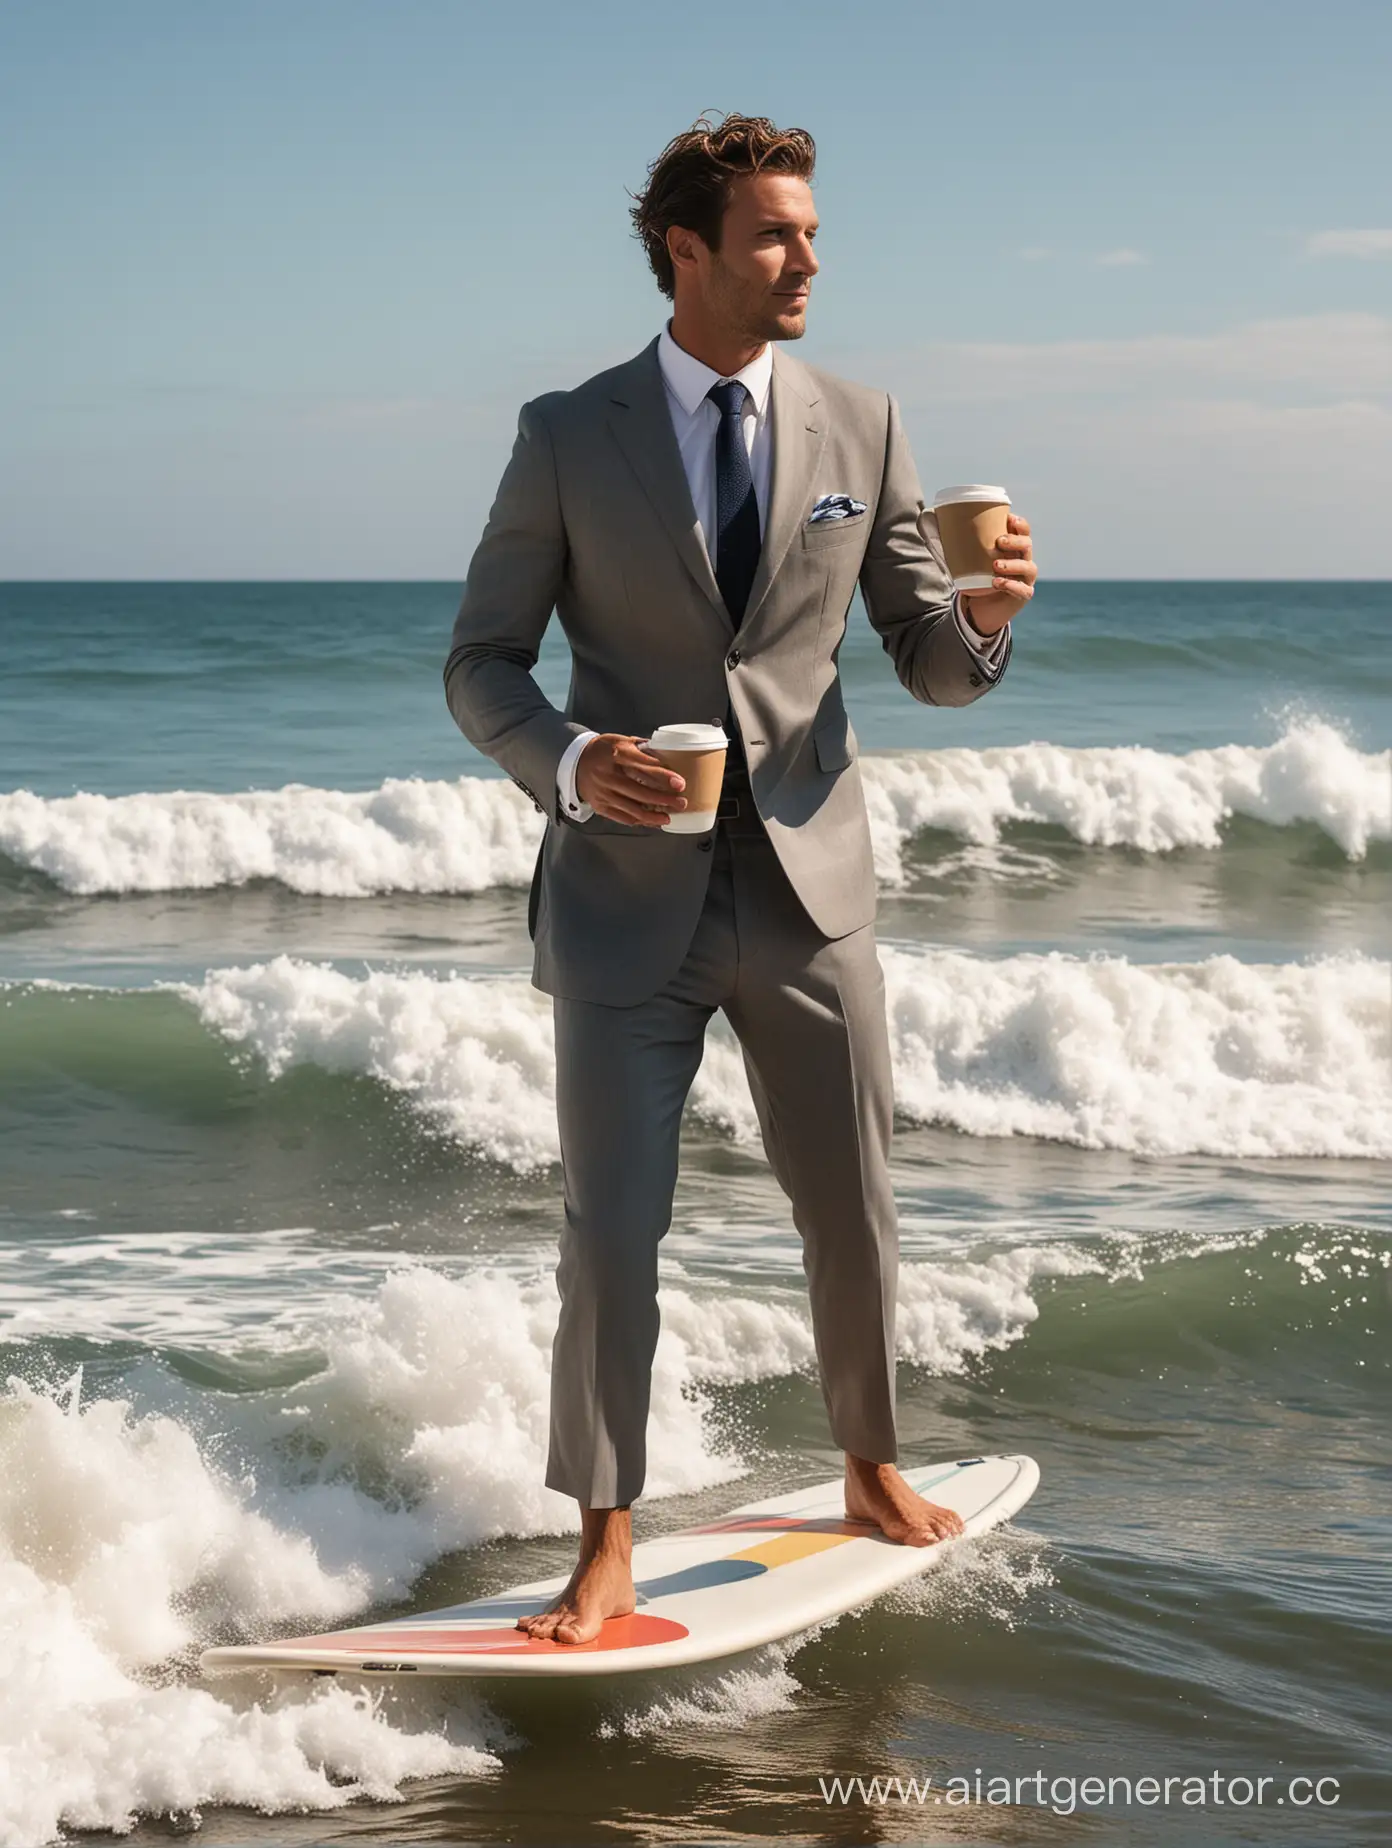 мужчина в классическом костюме в момент занятия серфингом стоит на доске для серфинга на волне в океане держит в руке кофейный стаканчик